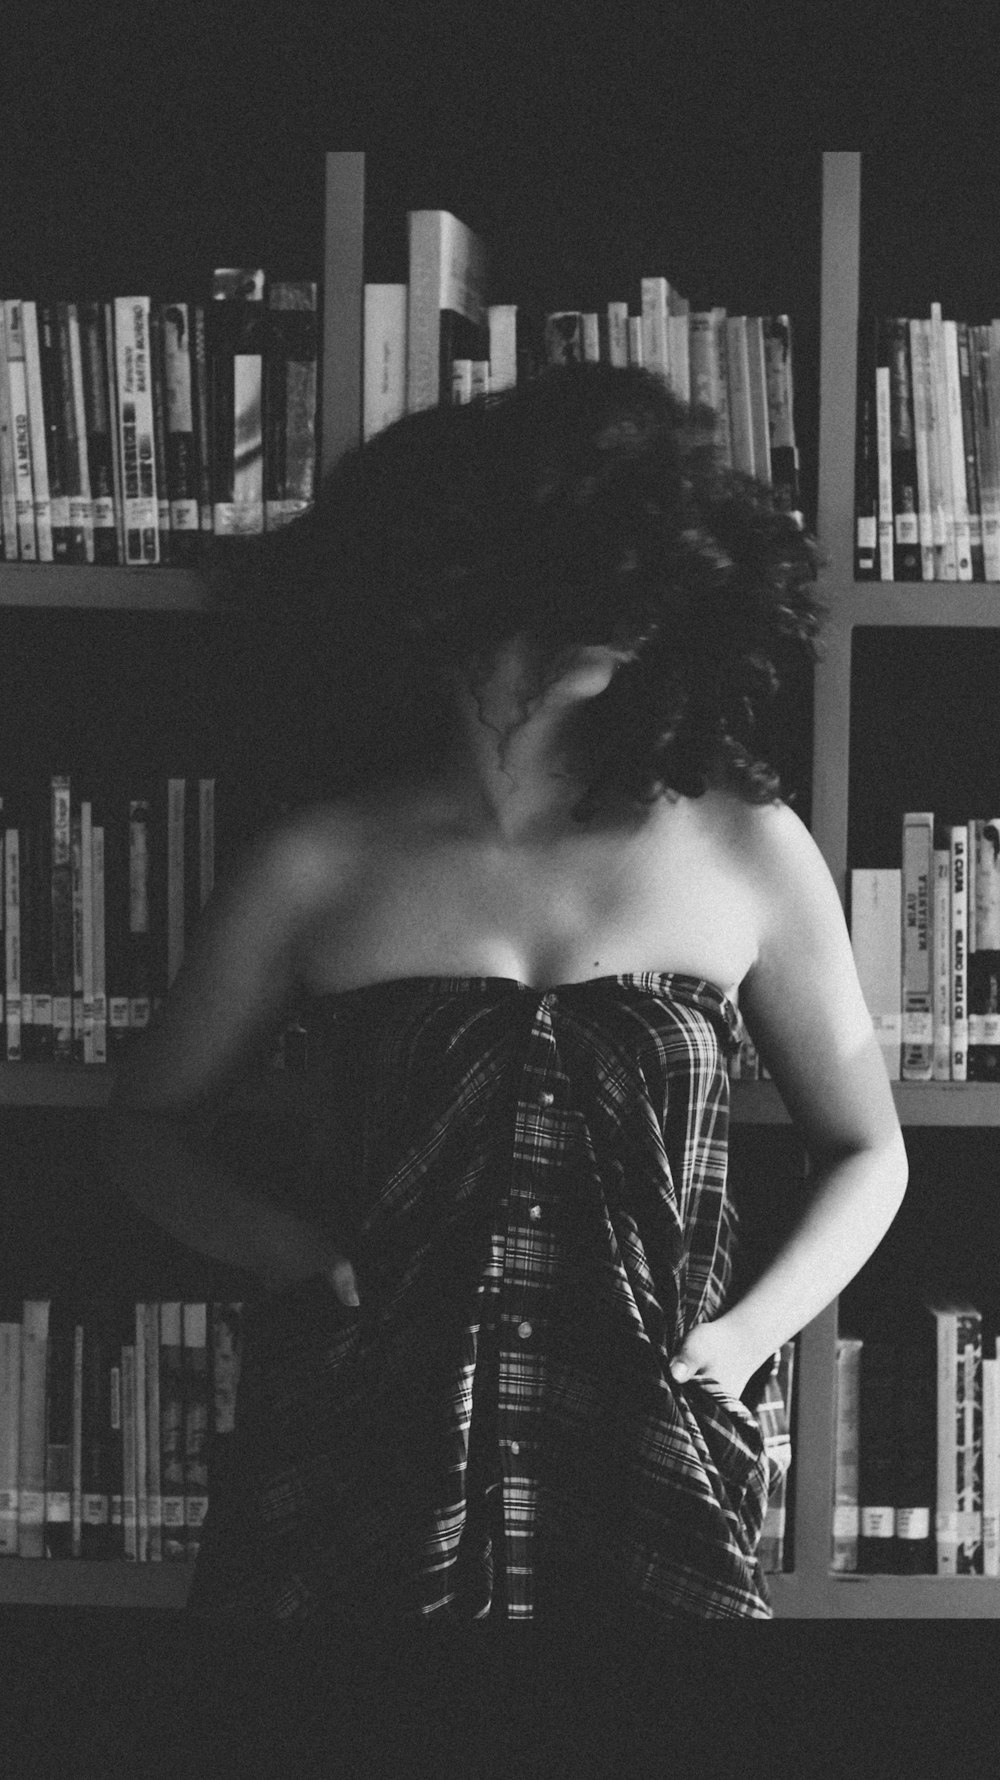 fotografia in scala di grigi di donna che indossa pantaloni marroni con capelli ricci in piedi accanto alla libreria